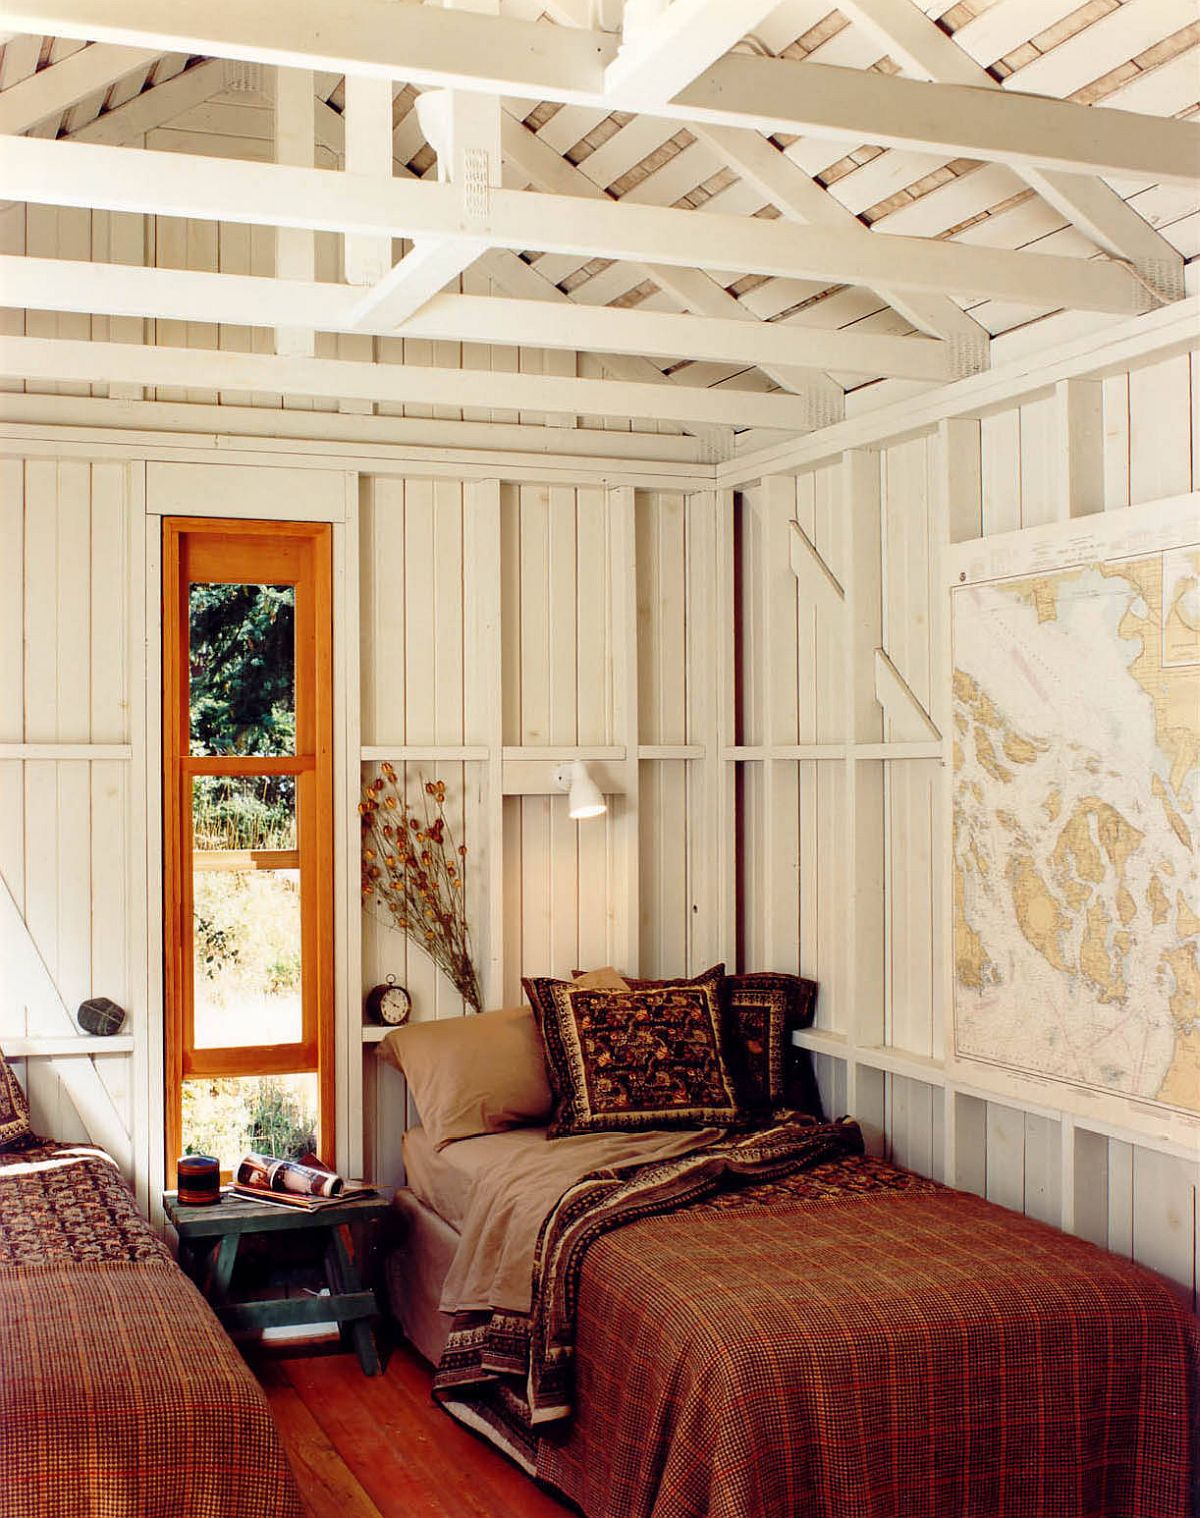 Hình ảnh phòng ngủ với tông màu nâu ấm áp kết hợp màu trắng, trang trí bản đồ